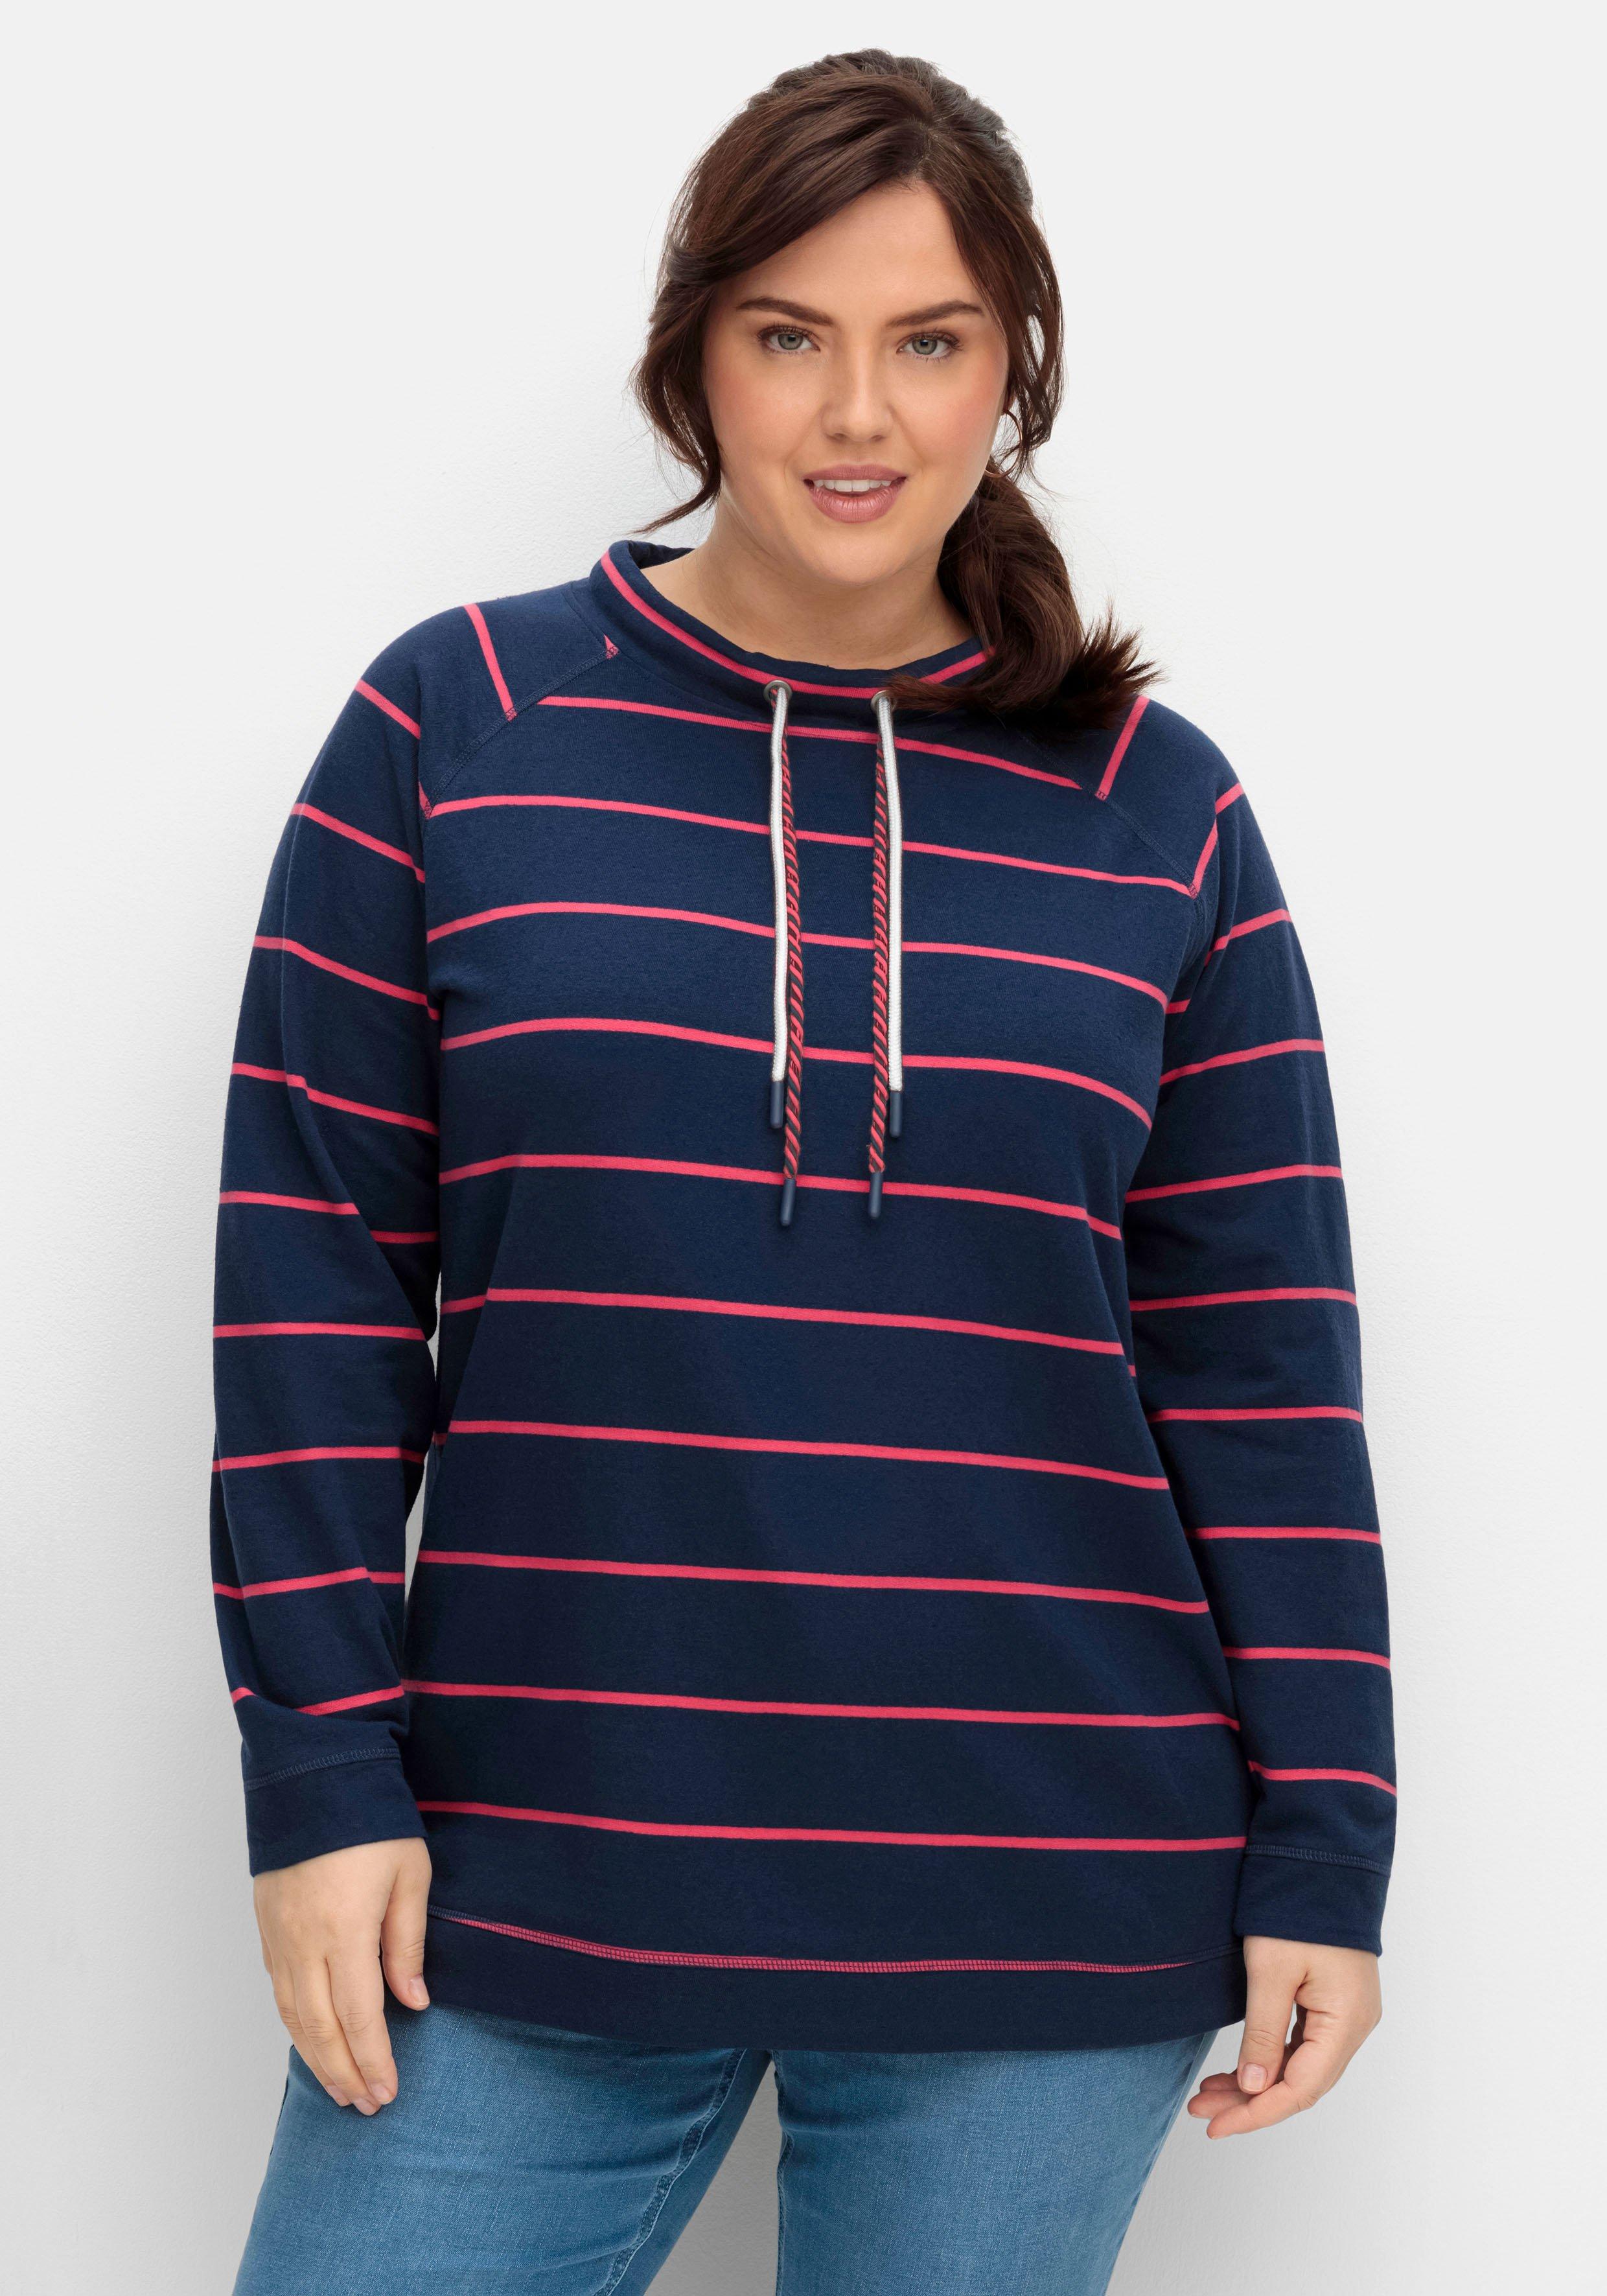 Damen Sweatshirts & -jacken | Größen Größe große ♥ Plus sheego Mode 58 Size ›